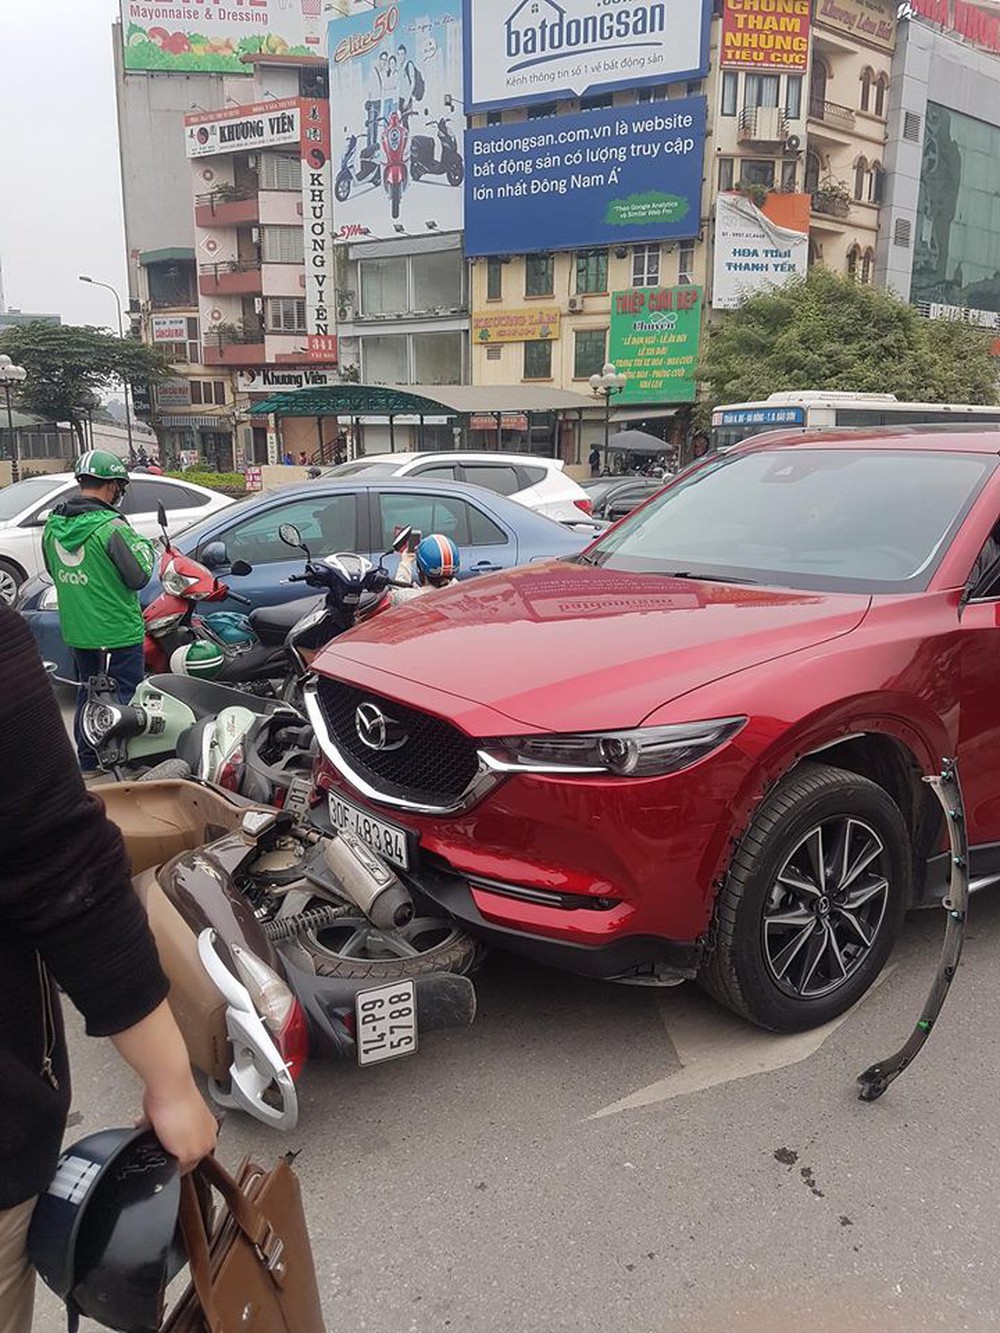 Hiện trường tai nạn xe Mazda đâm liên hoàn nhiều xe máy, tài xế nghi là nữ - Ảnh 5.